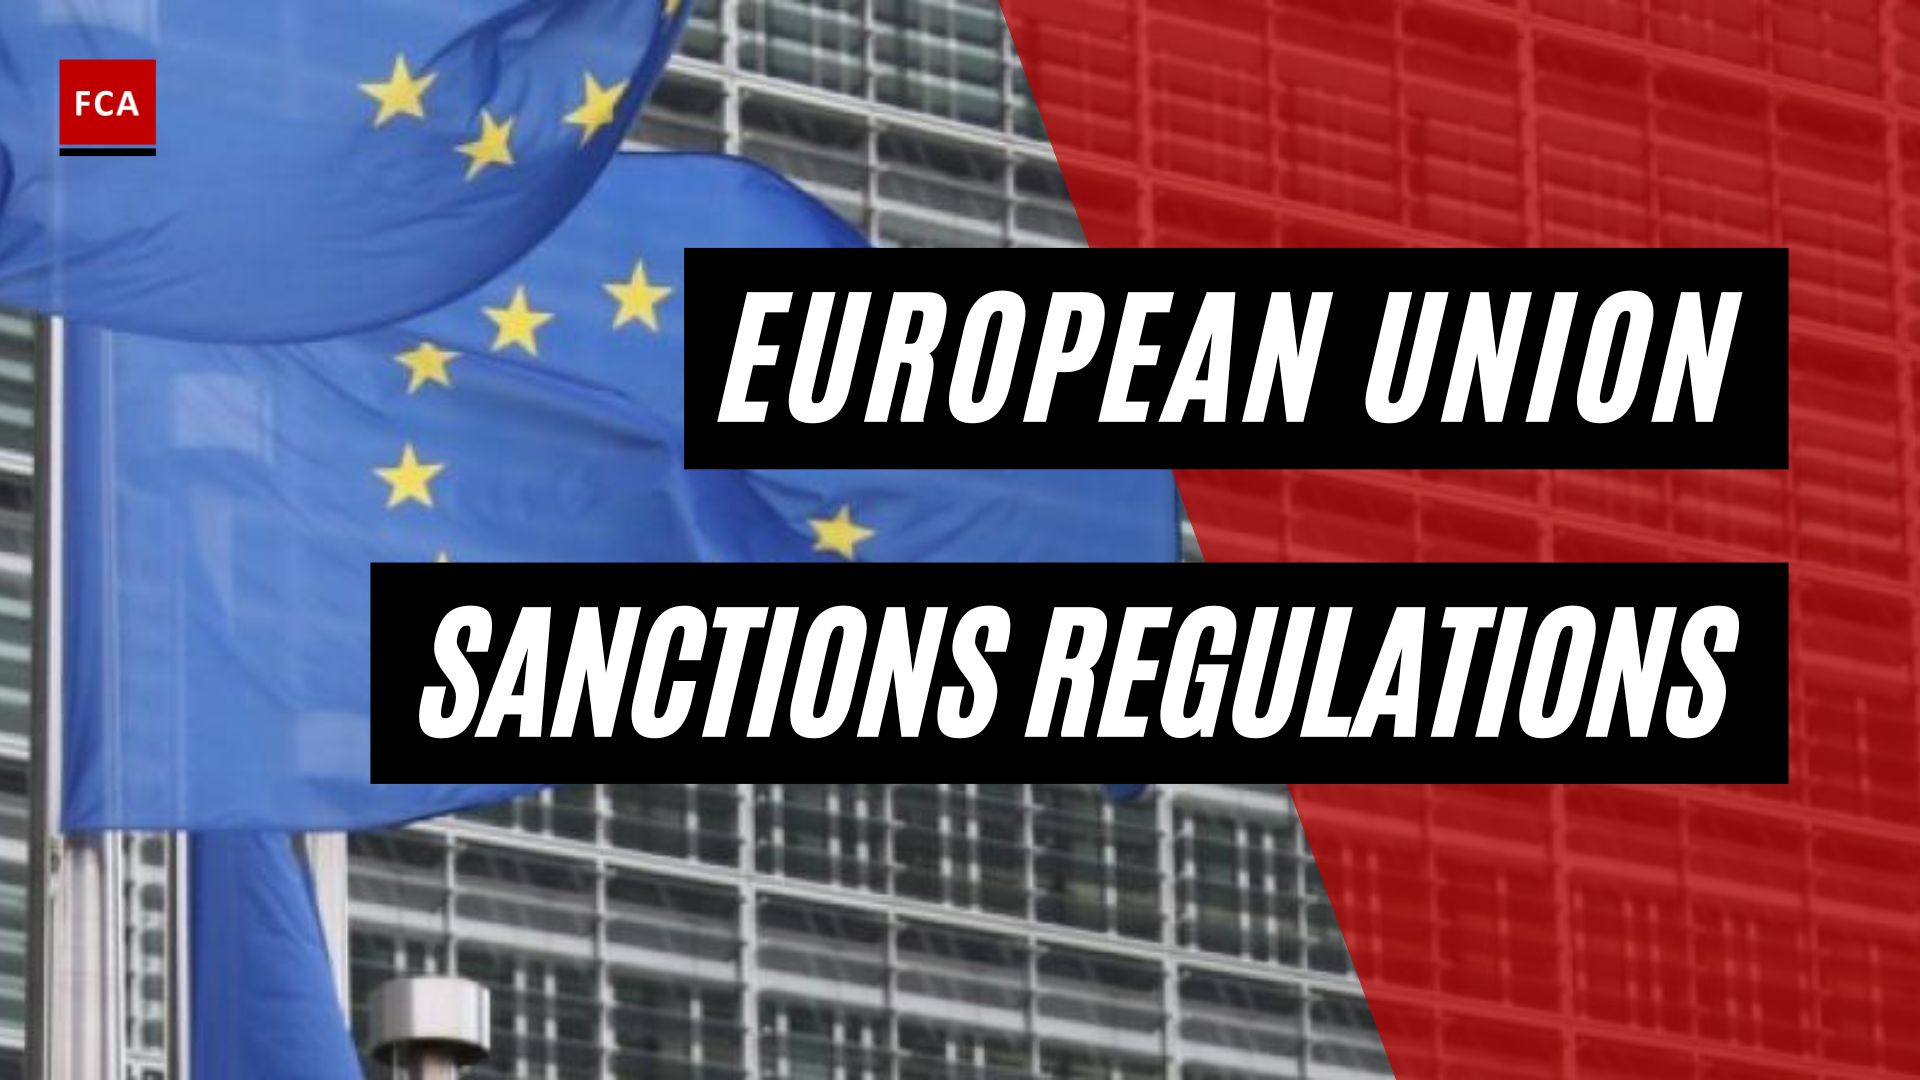 European Union Sanctions Regulations